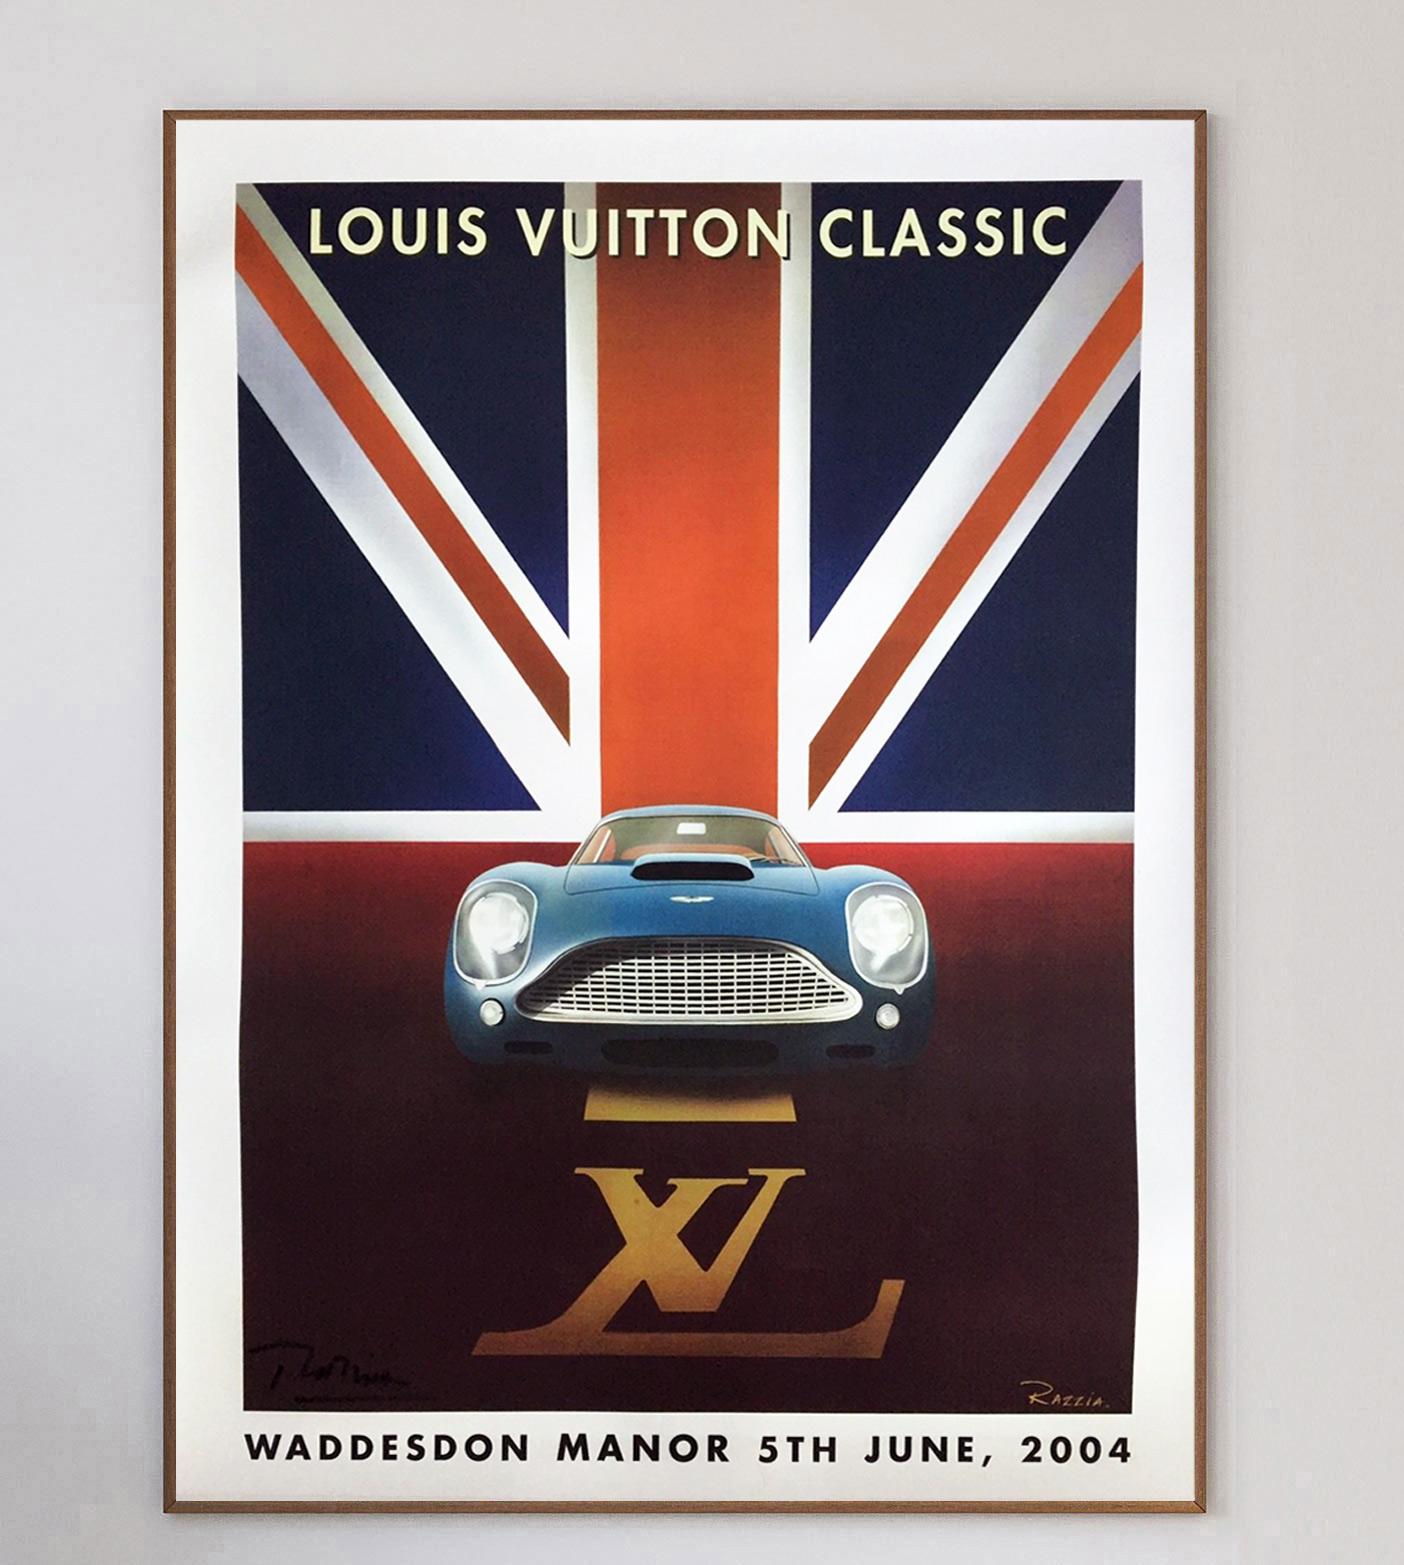 Die Louis Vuitton Classic, die im Juni 2004 in Waddesdon Manor in Oxford stattfand, war eine klassische Katzenveranstaltung der französischen Luxusmarke. Mit einem wunderschönen Aston Martin vor einem Union Jack ist das Art-Deco-Design durch und